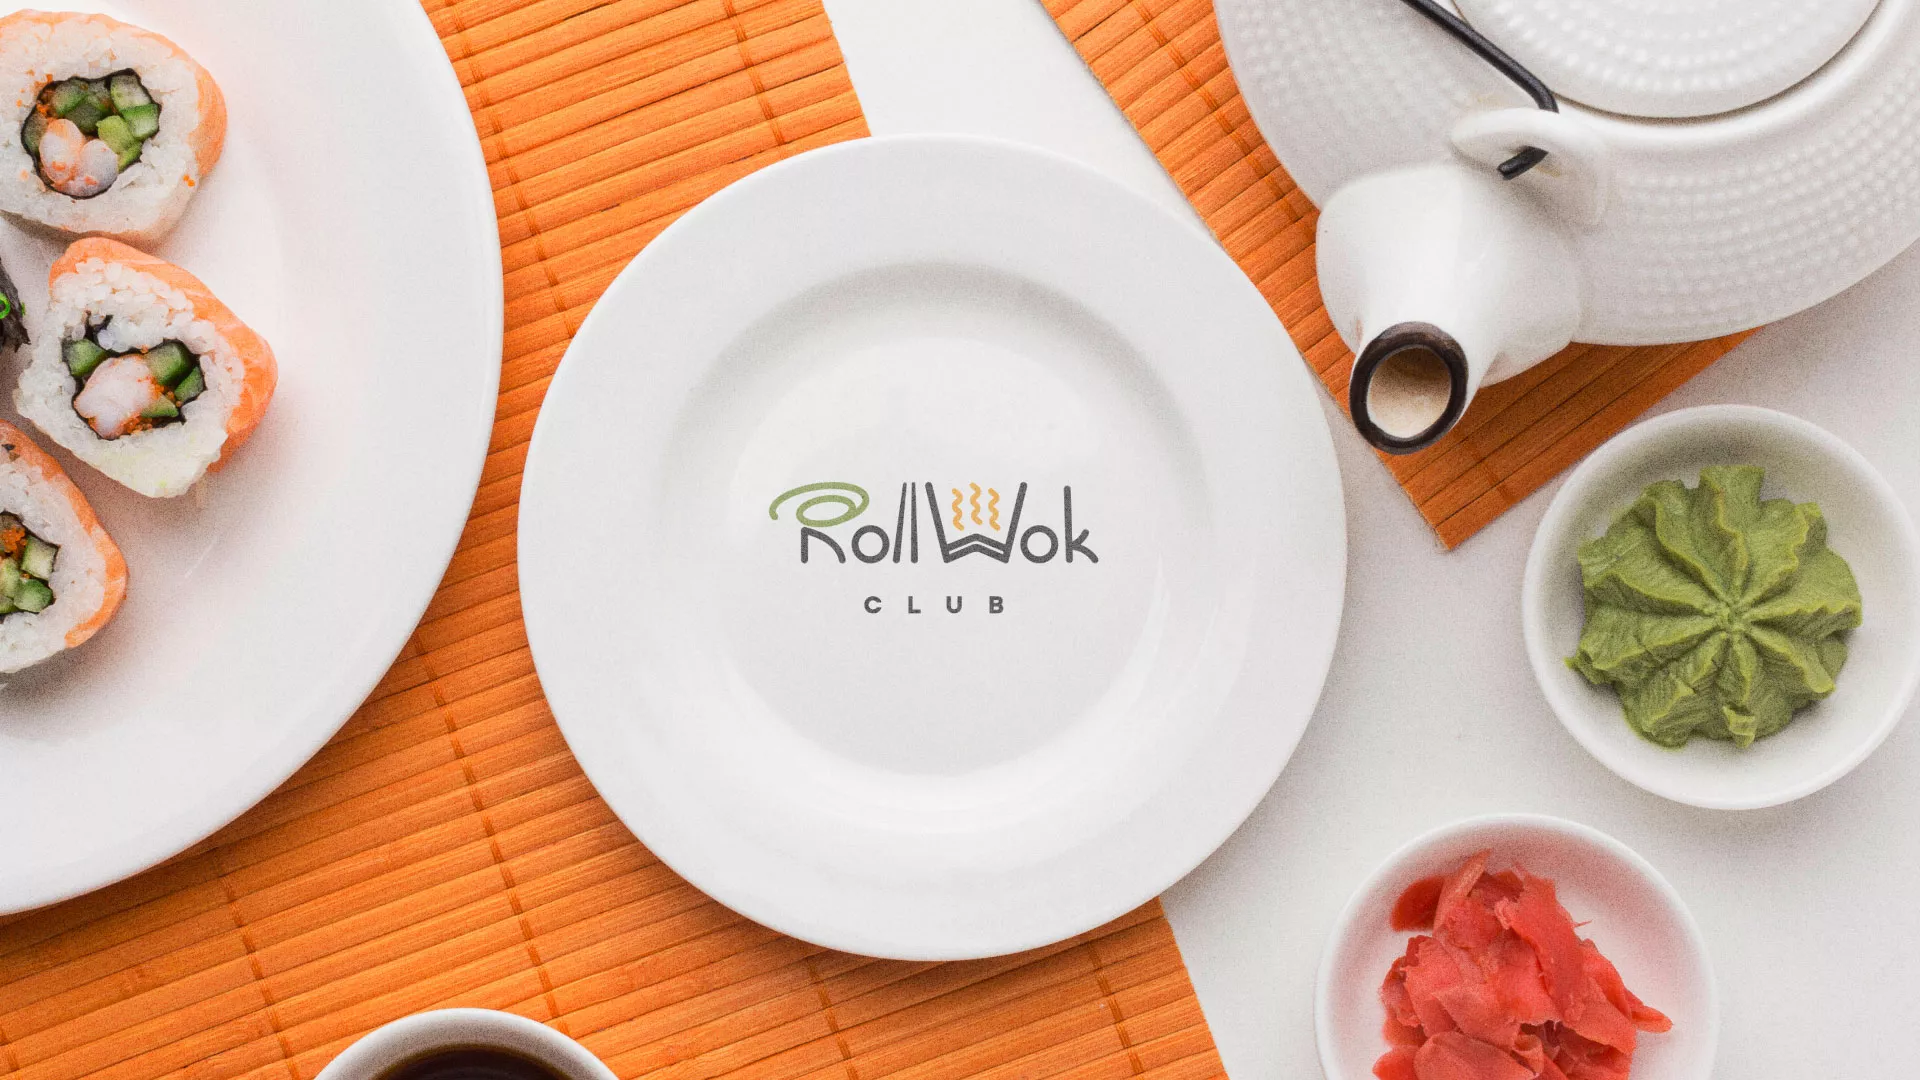 Разработка логотипа и фирменного стиля суши-бара «Roll Wok Club» в Пушкино